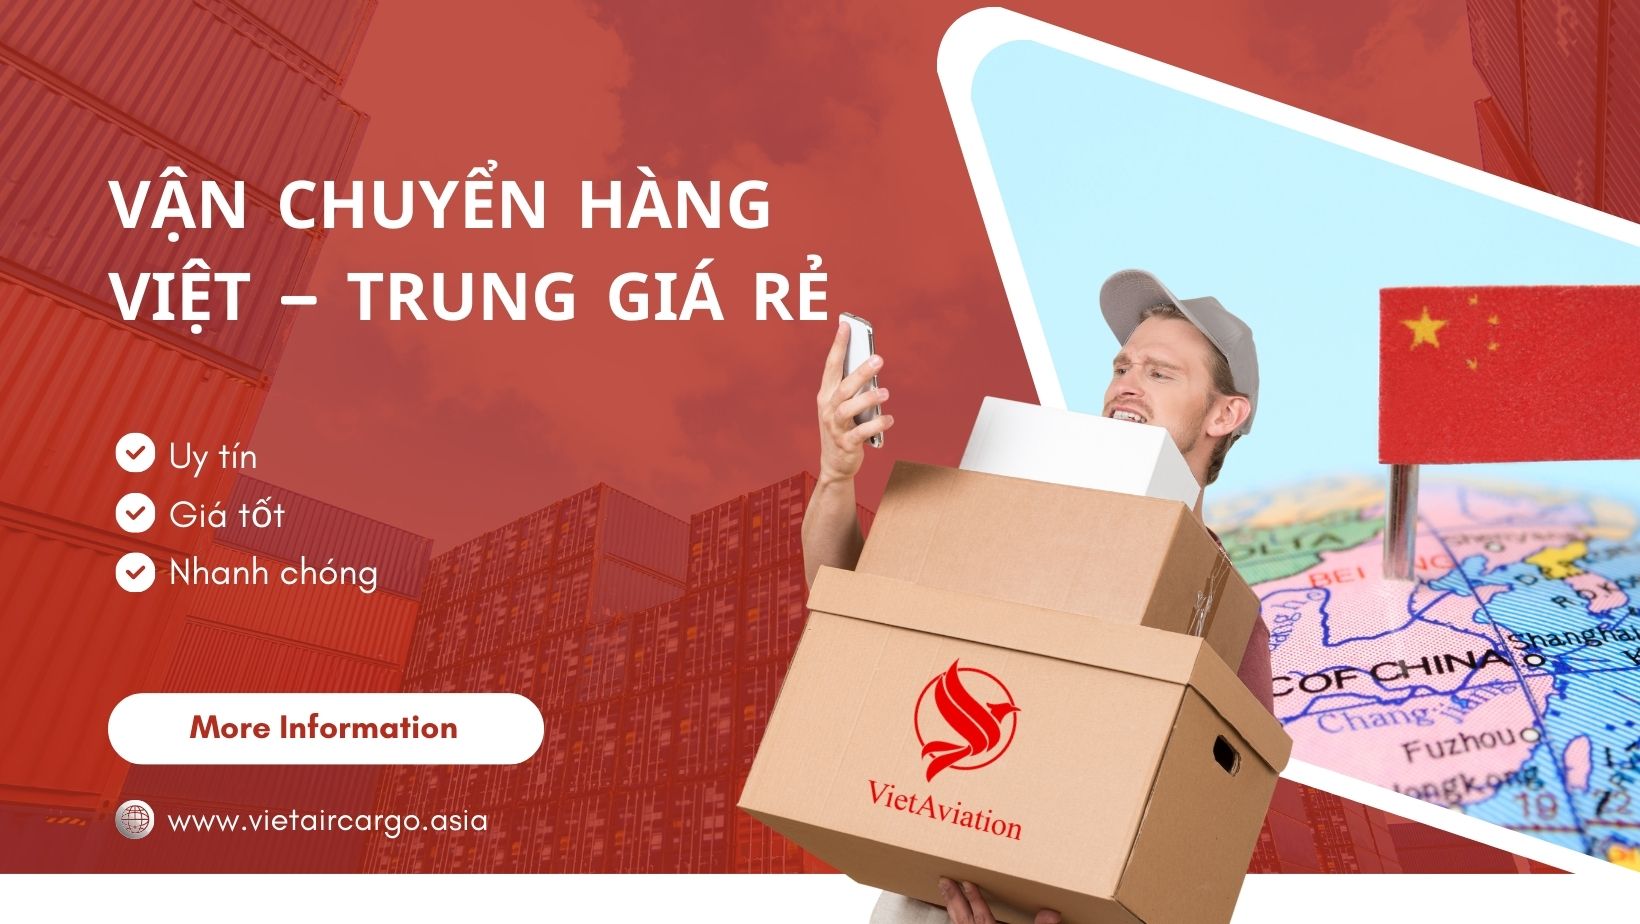 Vận chuyển hàng Việt - Trung giá rẻ uy tín